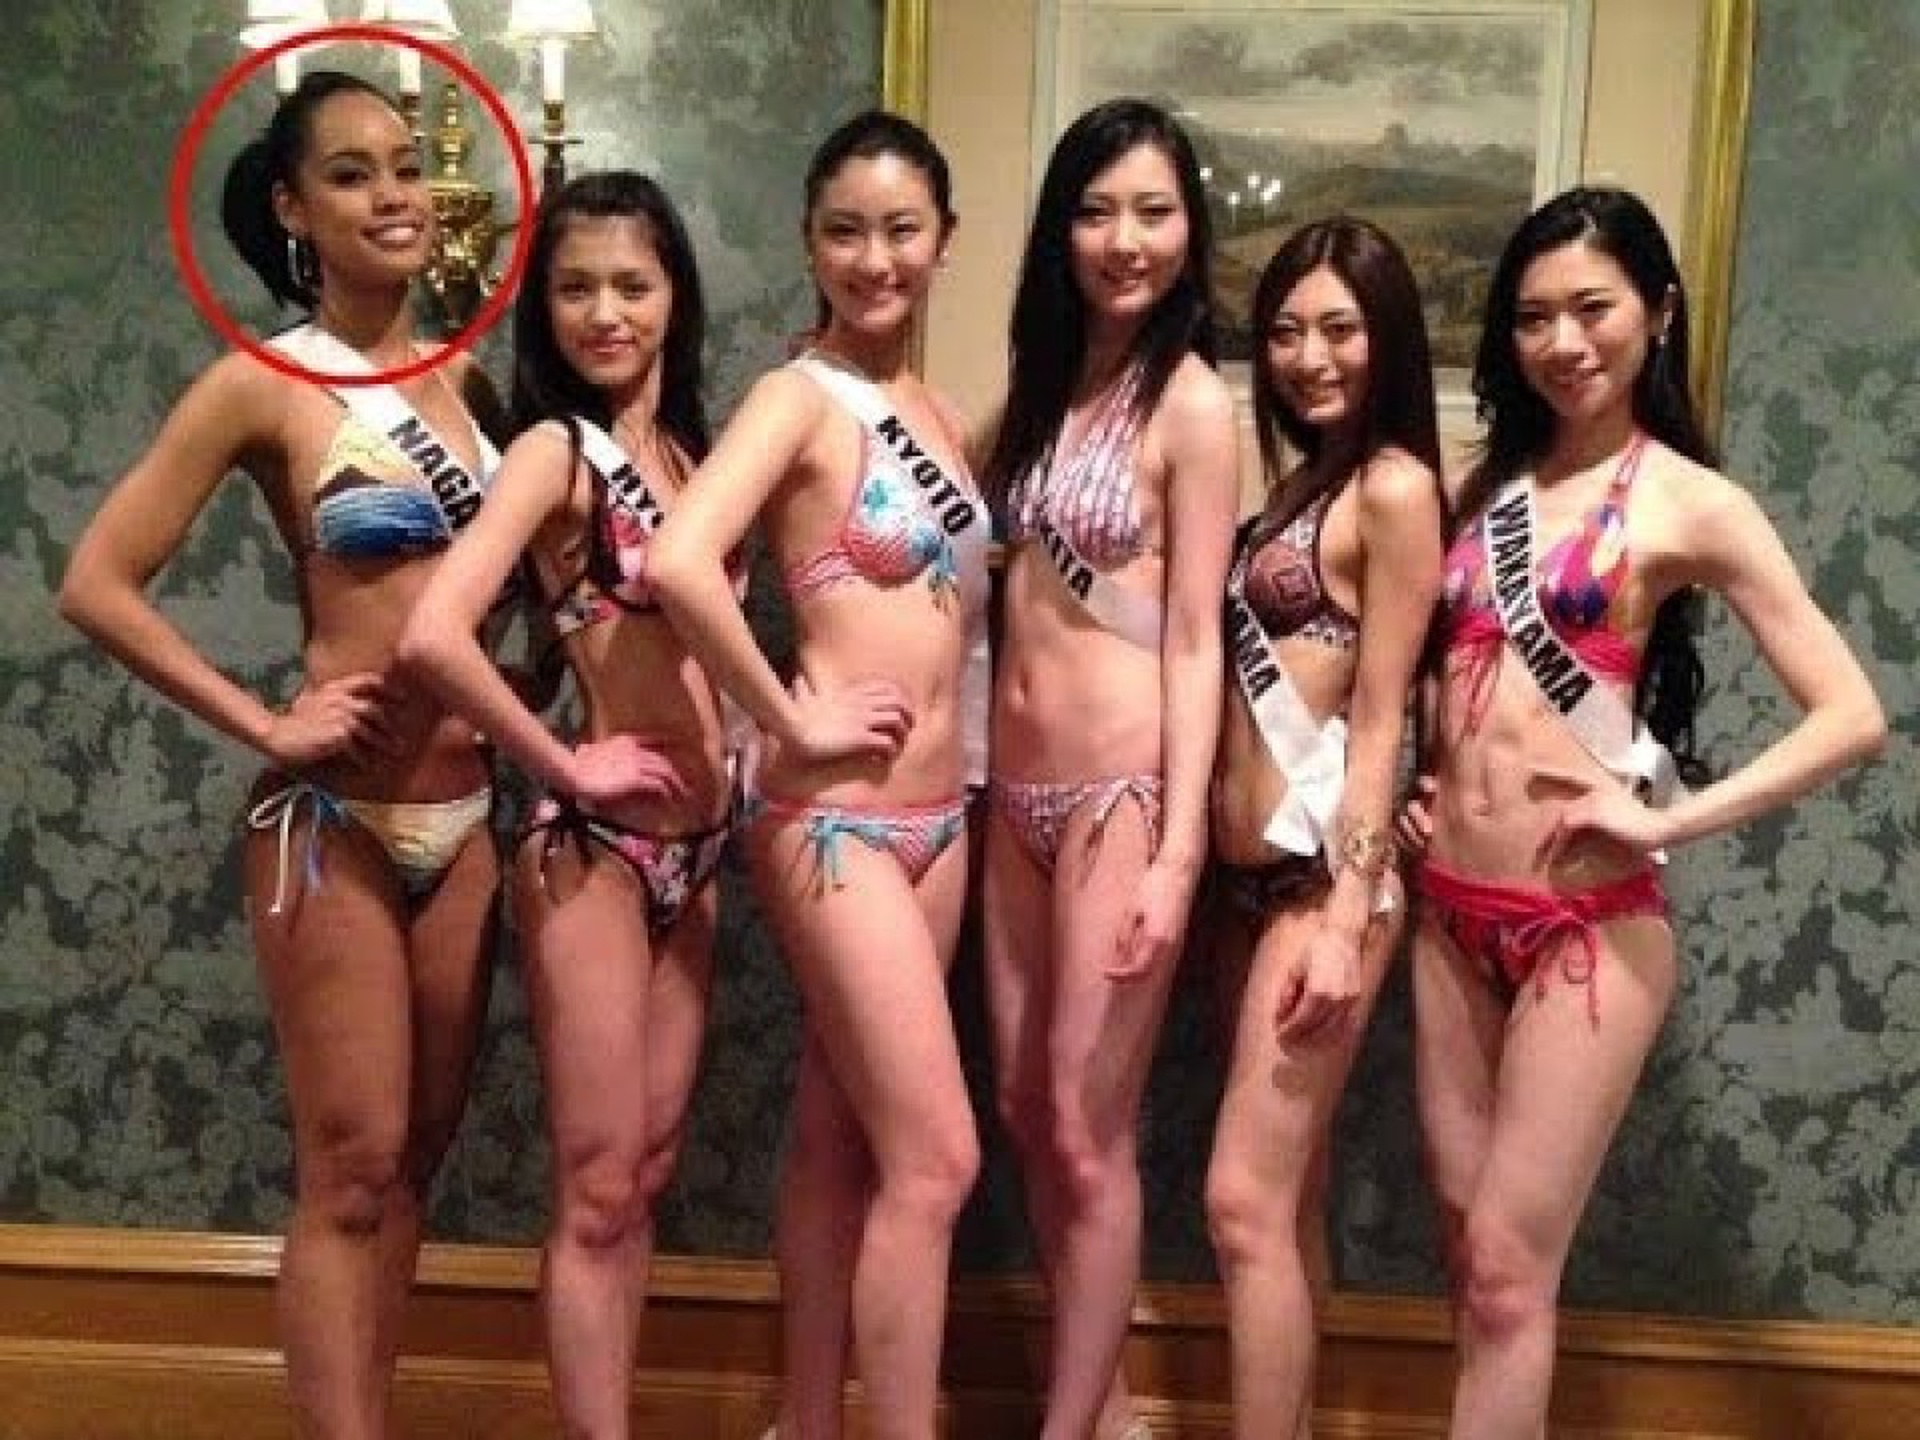 Мисс Японию” подвергли критике за неяпонскую внешность: 28 марта 2015,  11:24 - новости на Tengrinews.kz